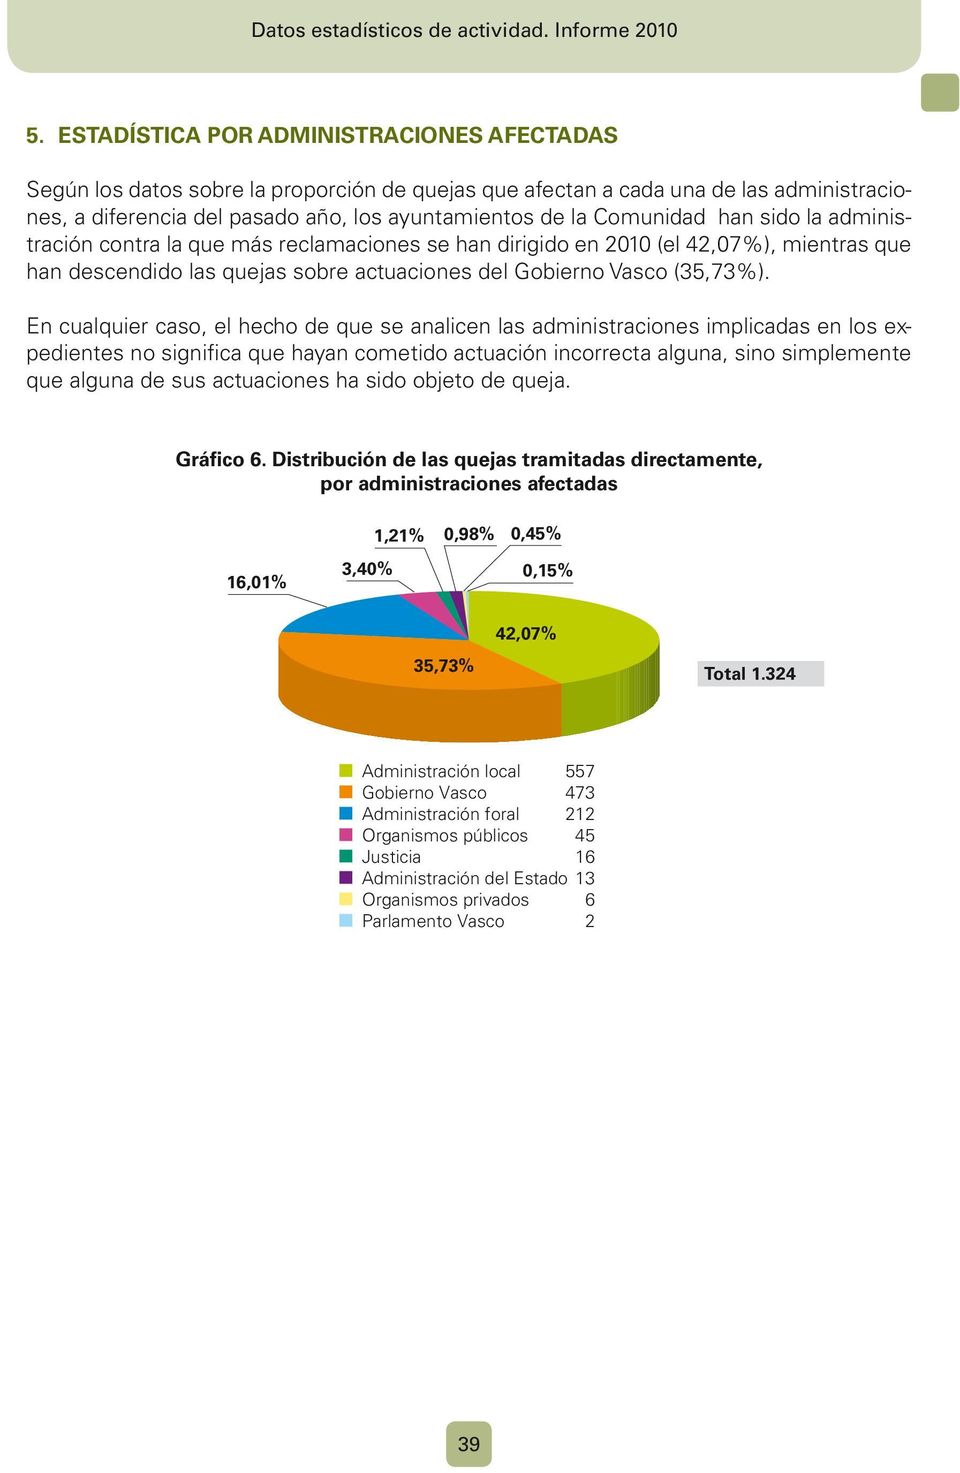 la Comunidad han sido la administración contra la que más reclamaciones se han dirigido en 2010 (el 42,07%), mientras que han descendido las quejas sobre actuaciones del Gobierno Vasco